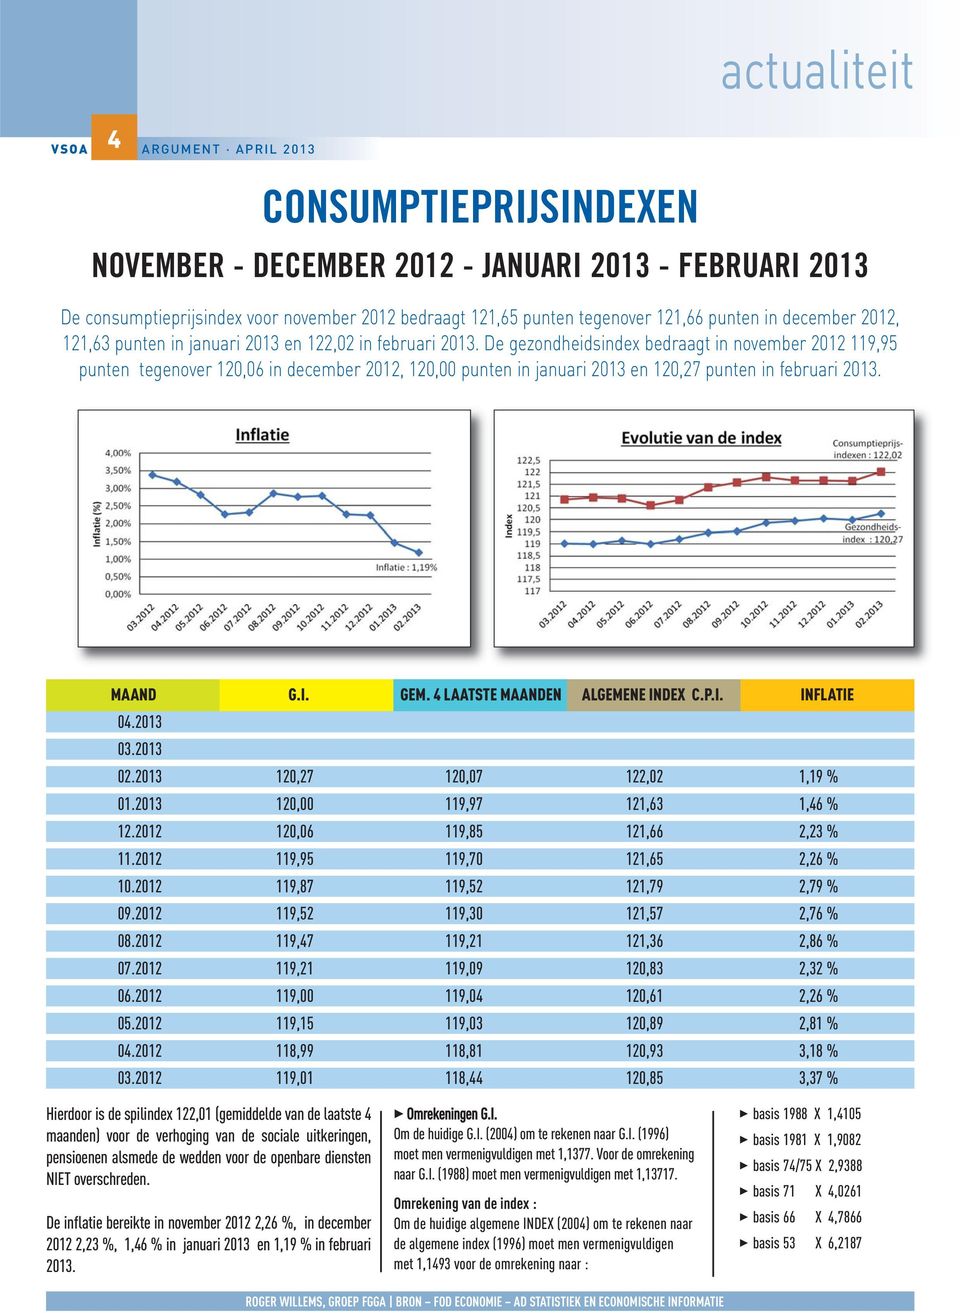 De gezondheidsindex bedraagt in november 2012 119,95 punten tegenover 120,06 in december 2012, 120,00 punten in januari 2013 en 120,27 punten in februari 2013. MAAND G.I. GEM.